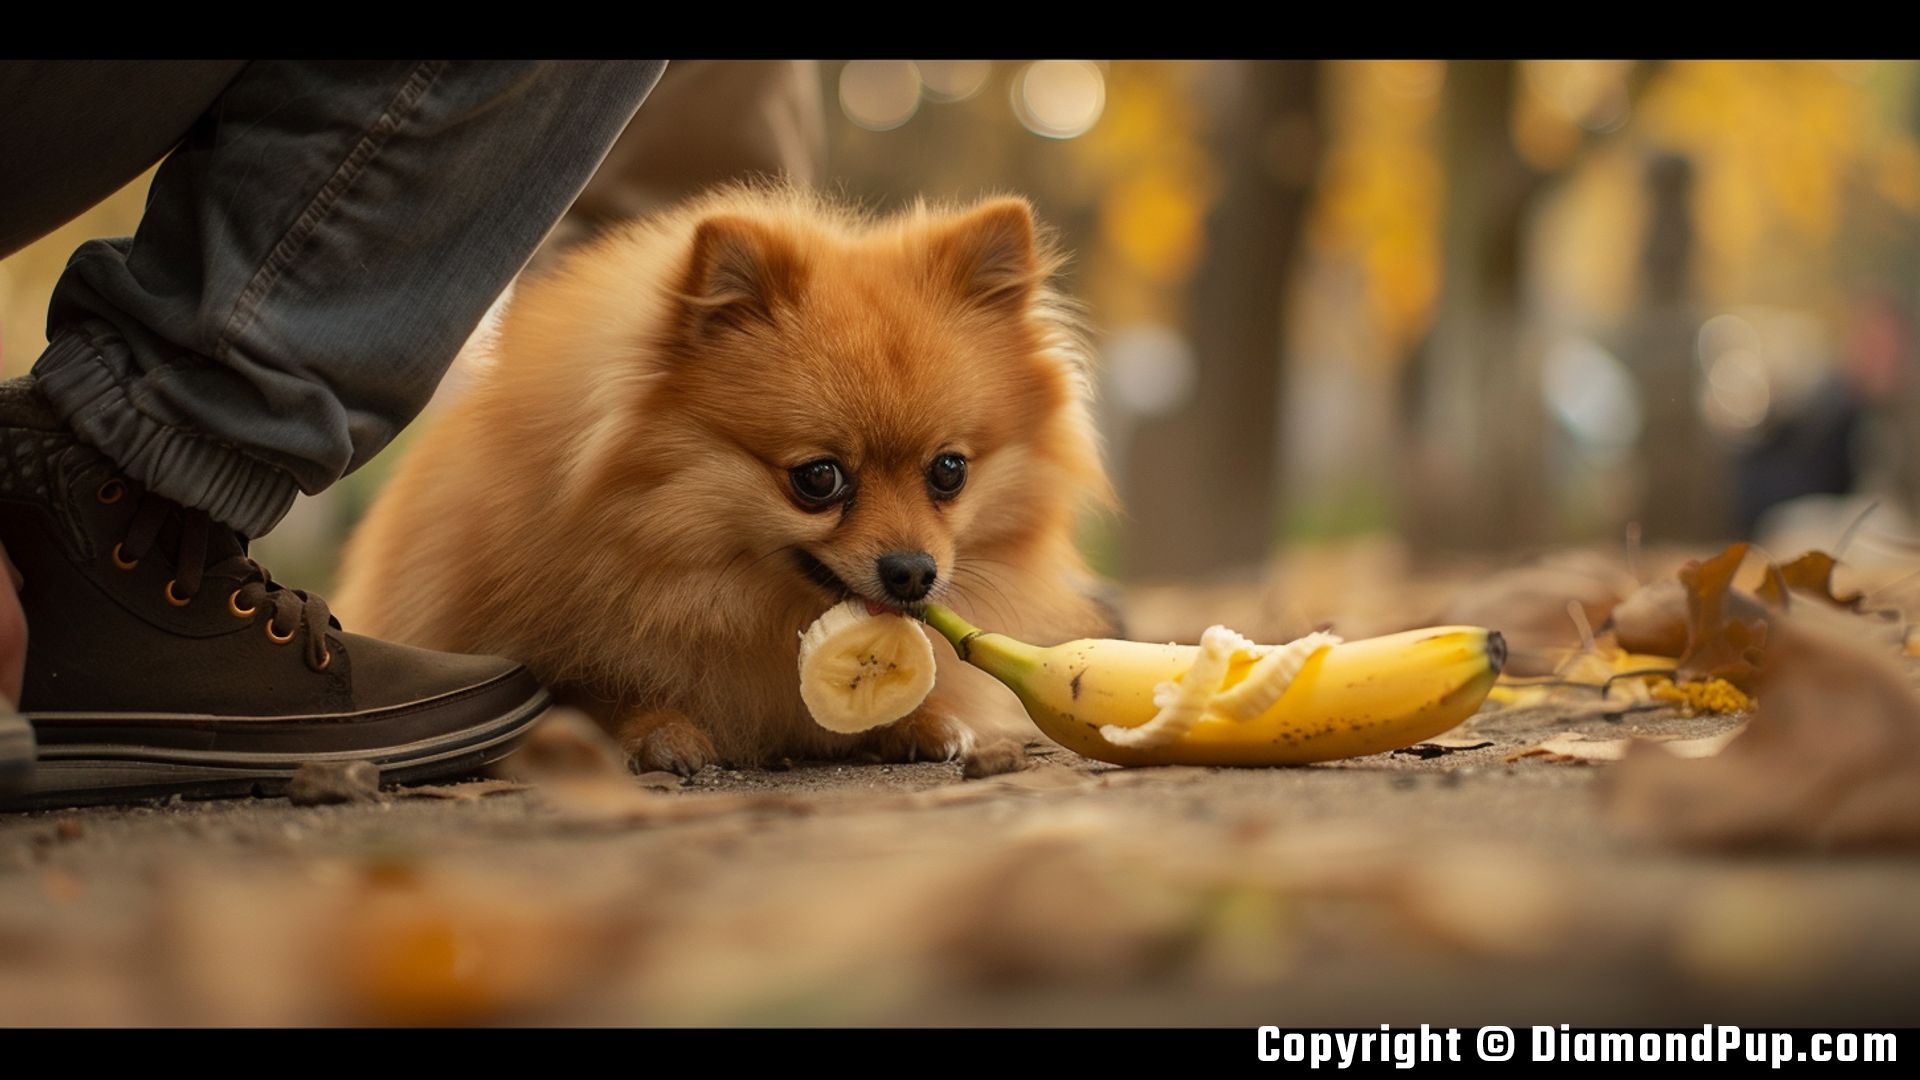 Image of a Happy Pomeranian Snacking on Banana